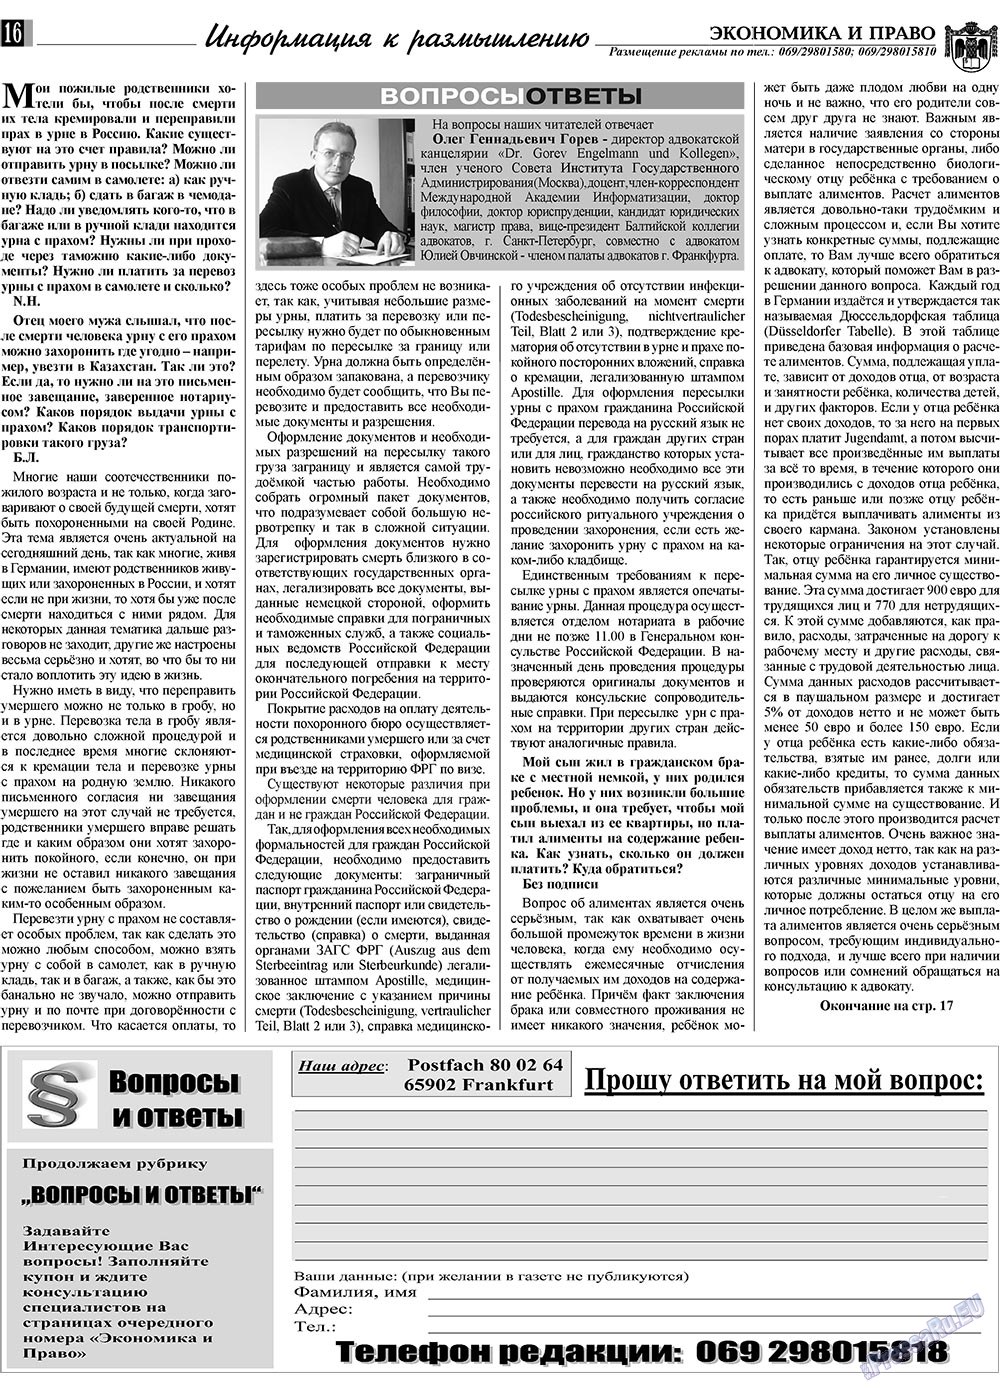 Экономика и право, газета. 2009 №7 стр.16